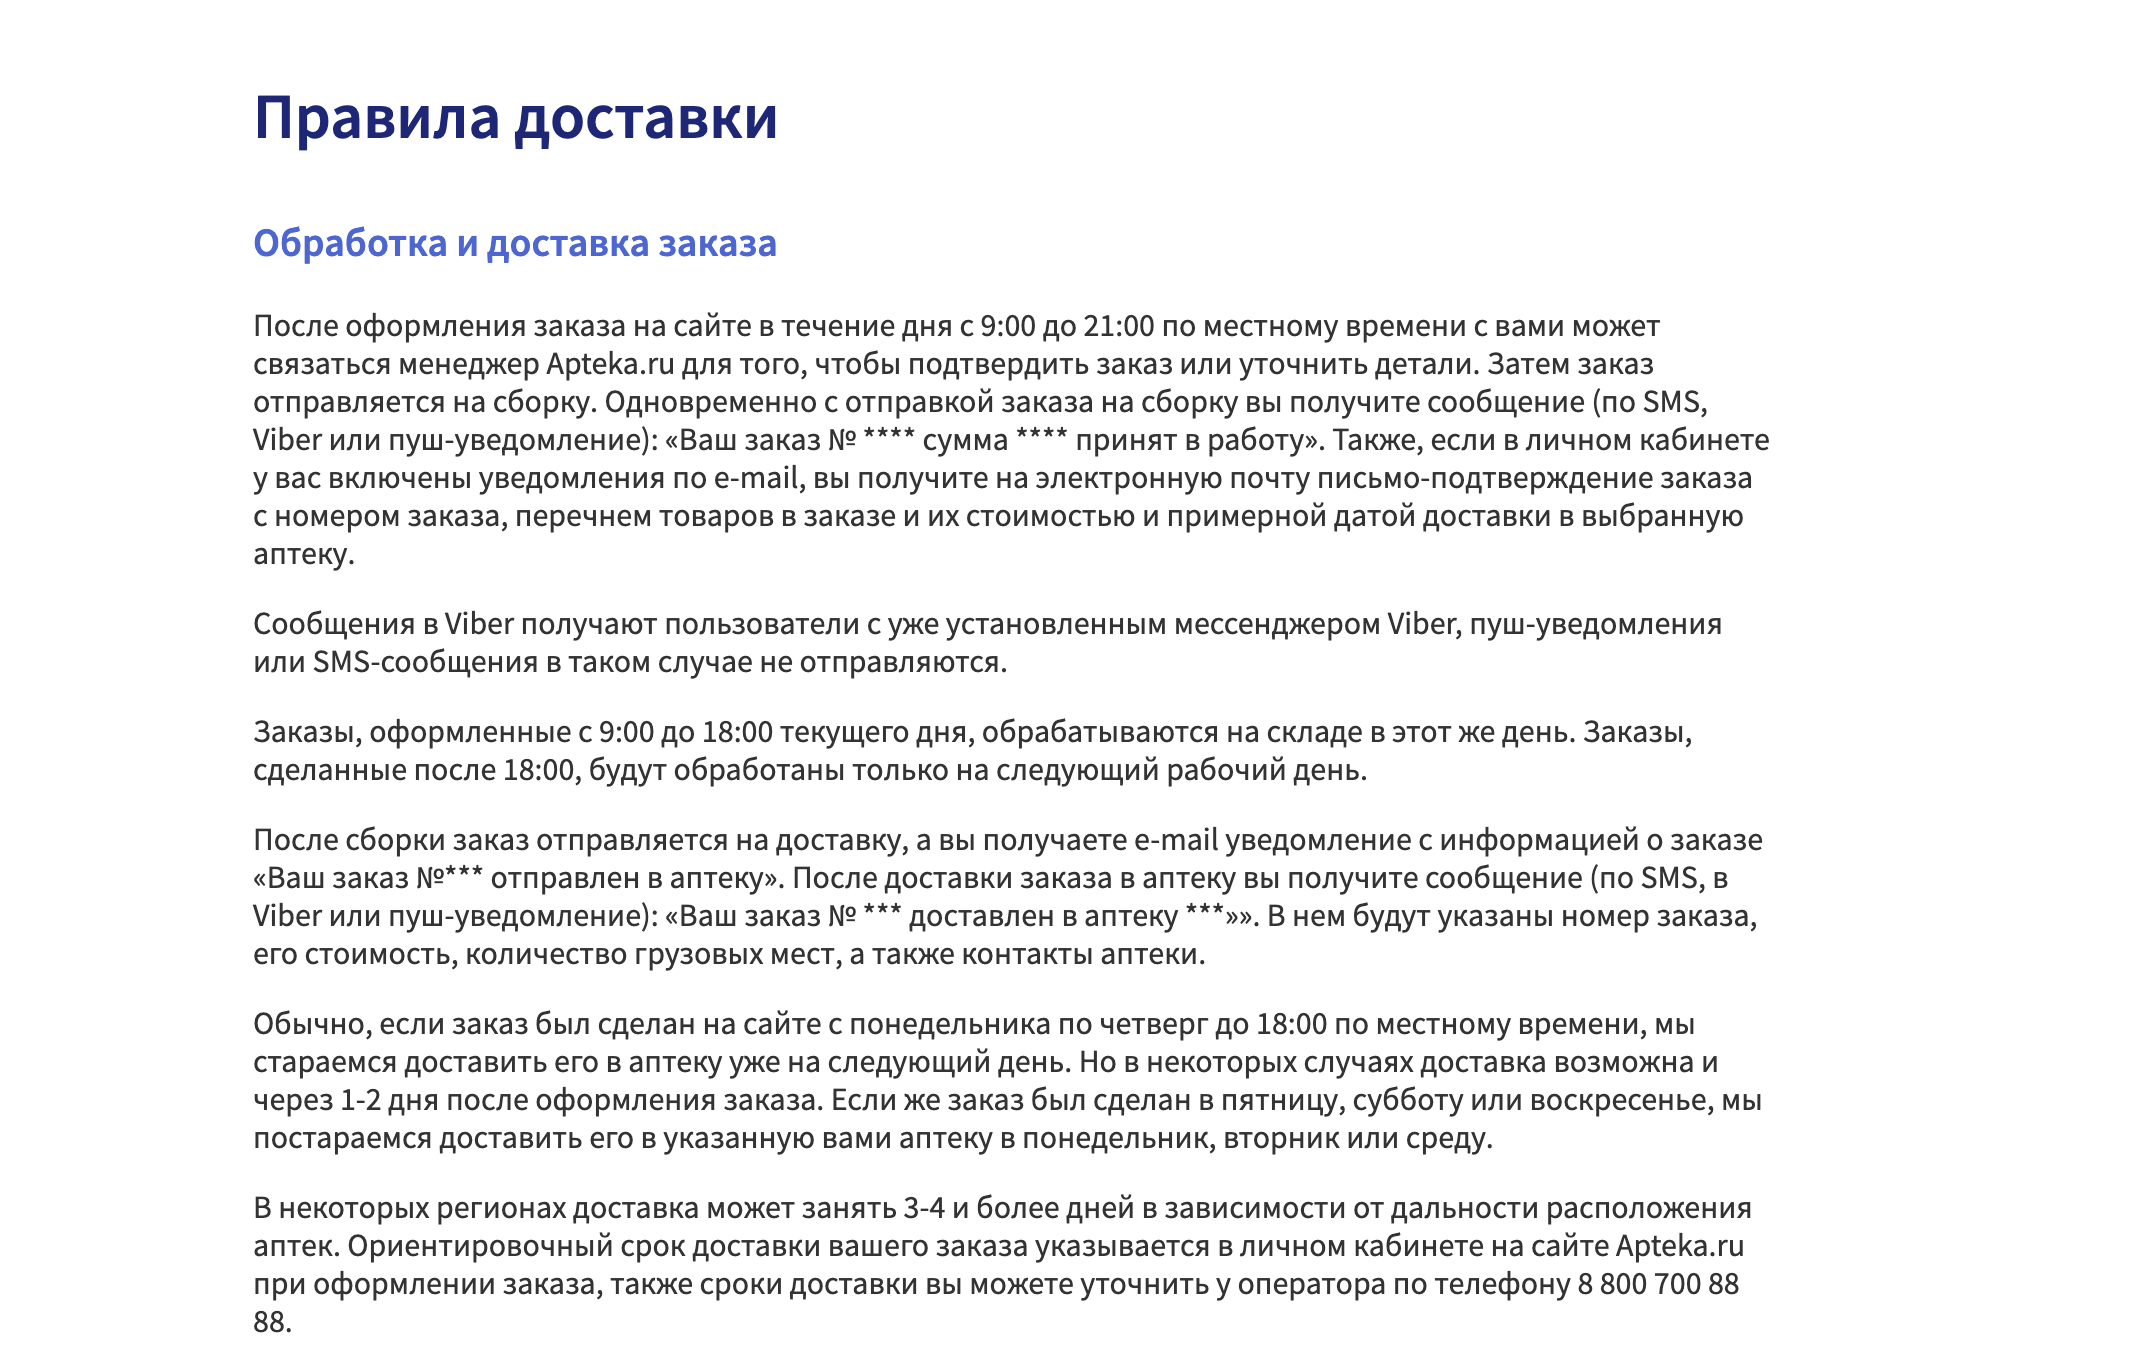 Как долго доставляет заказ Apteka.ru